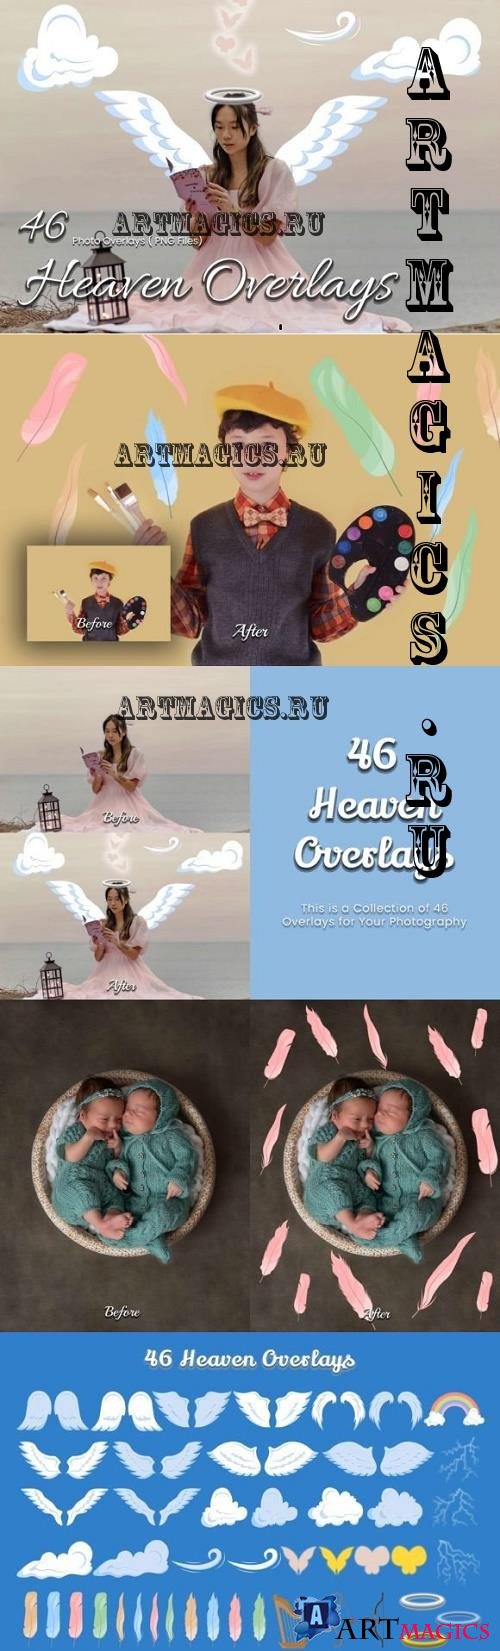 46 Heaven Photoshop Overlays - 17874427